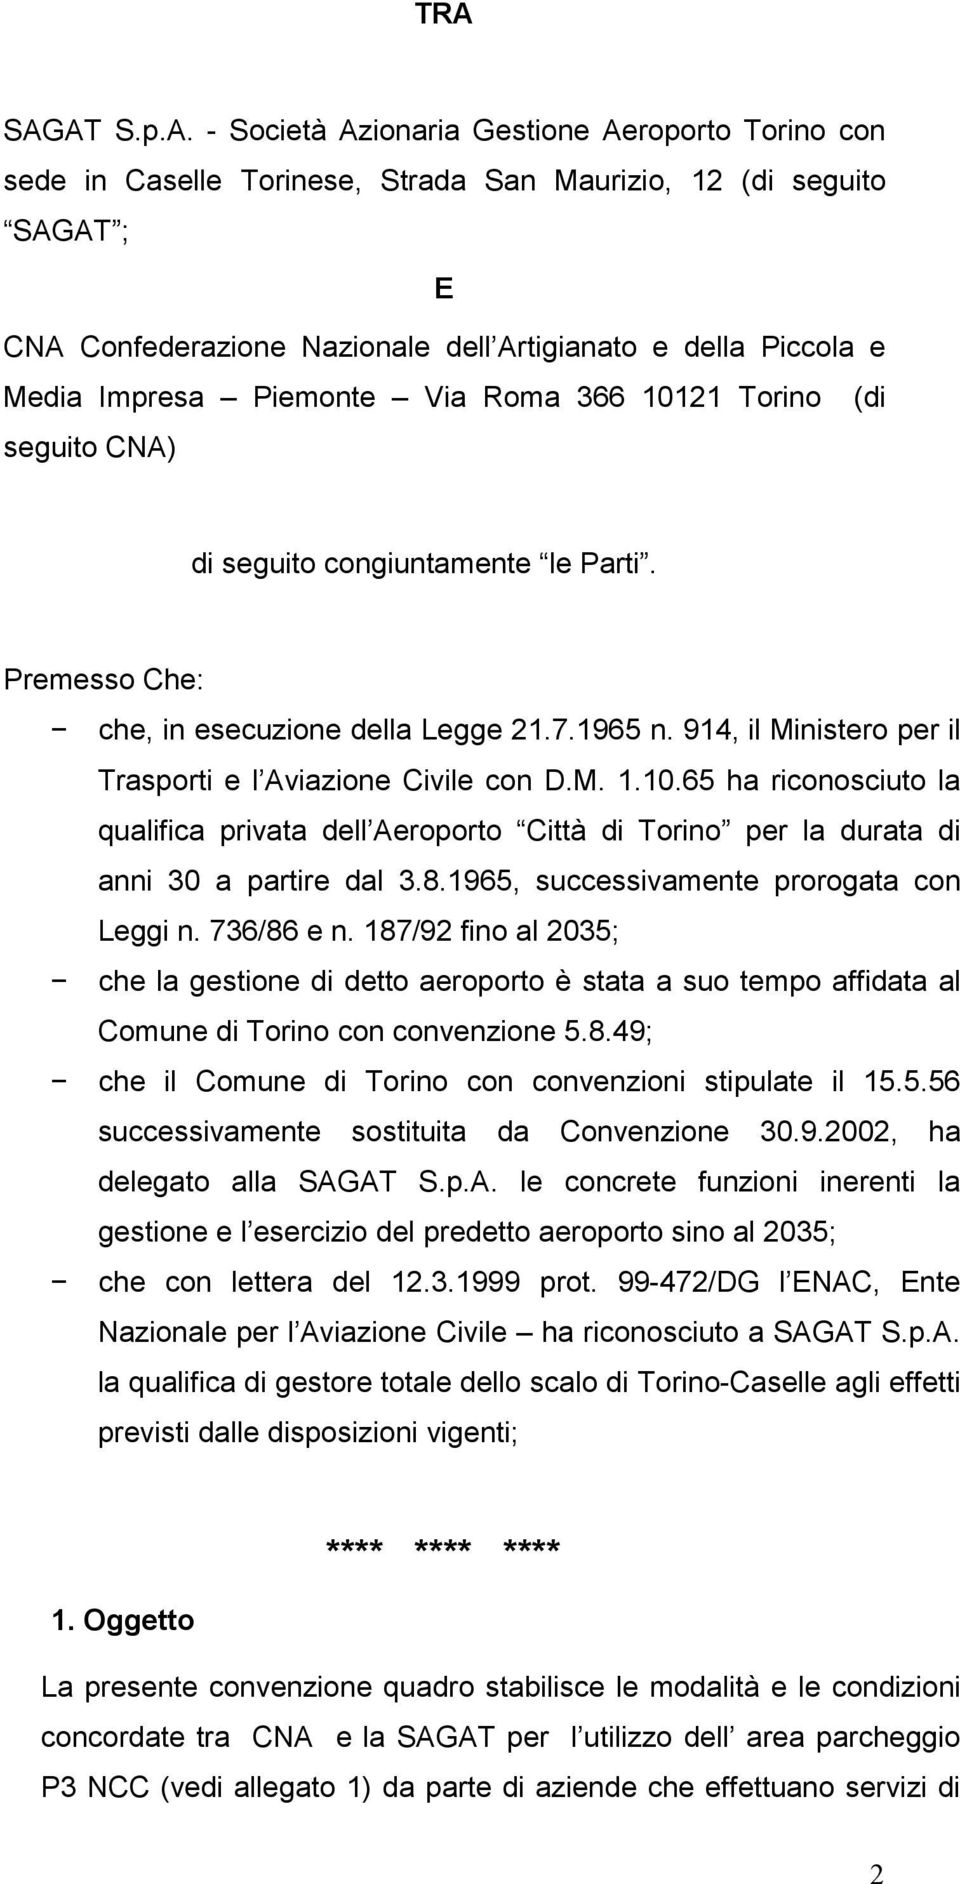 914, il Ministero per il Trasporti e l Aviazione Civile con D.M. 1.10.65 ha riconosciuto la qualifica privata dell Aeroporto Città di Torino per la durata di anni 30 a partire dal 3.8.